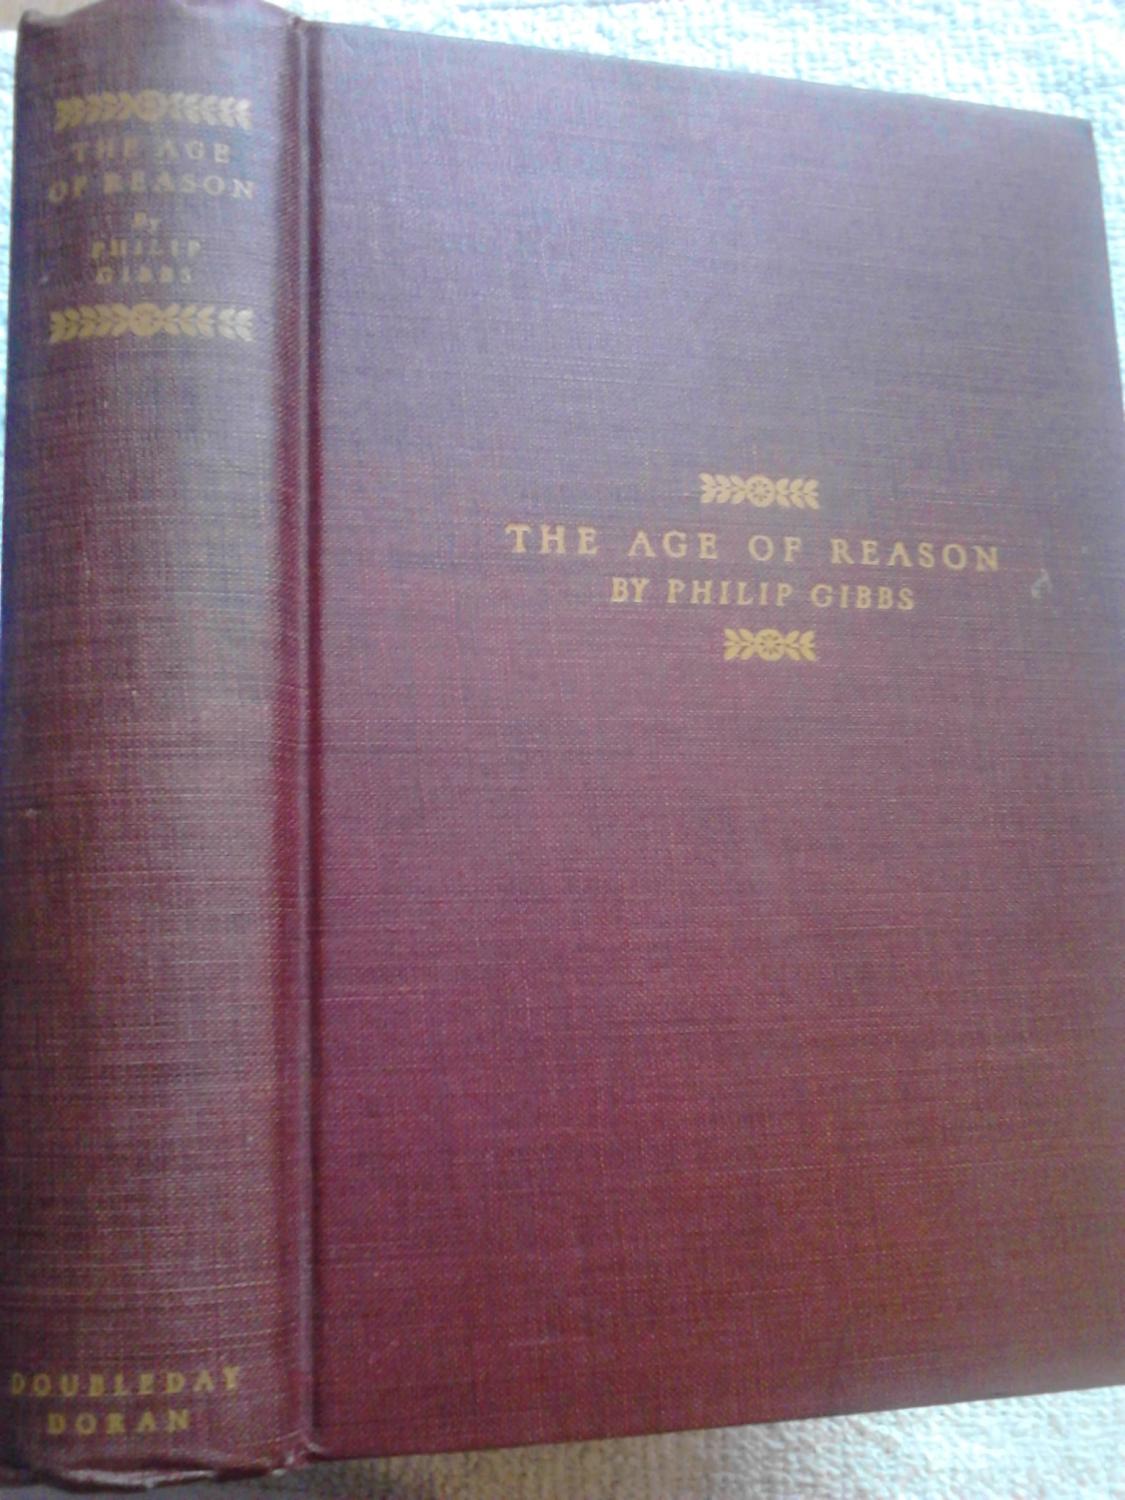 The Age of Reason: a Novel